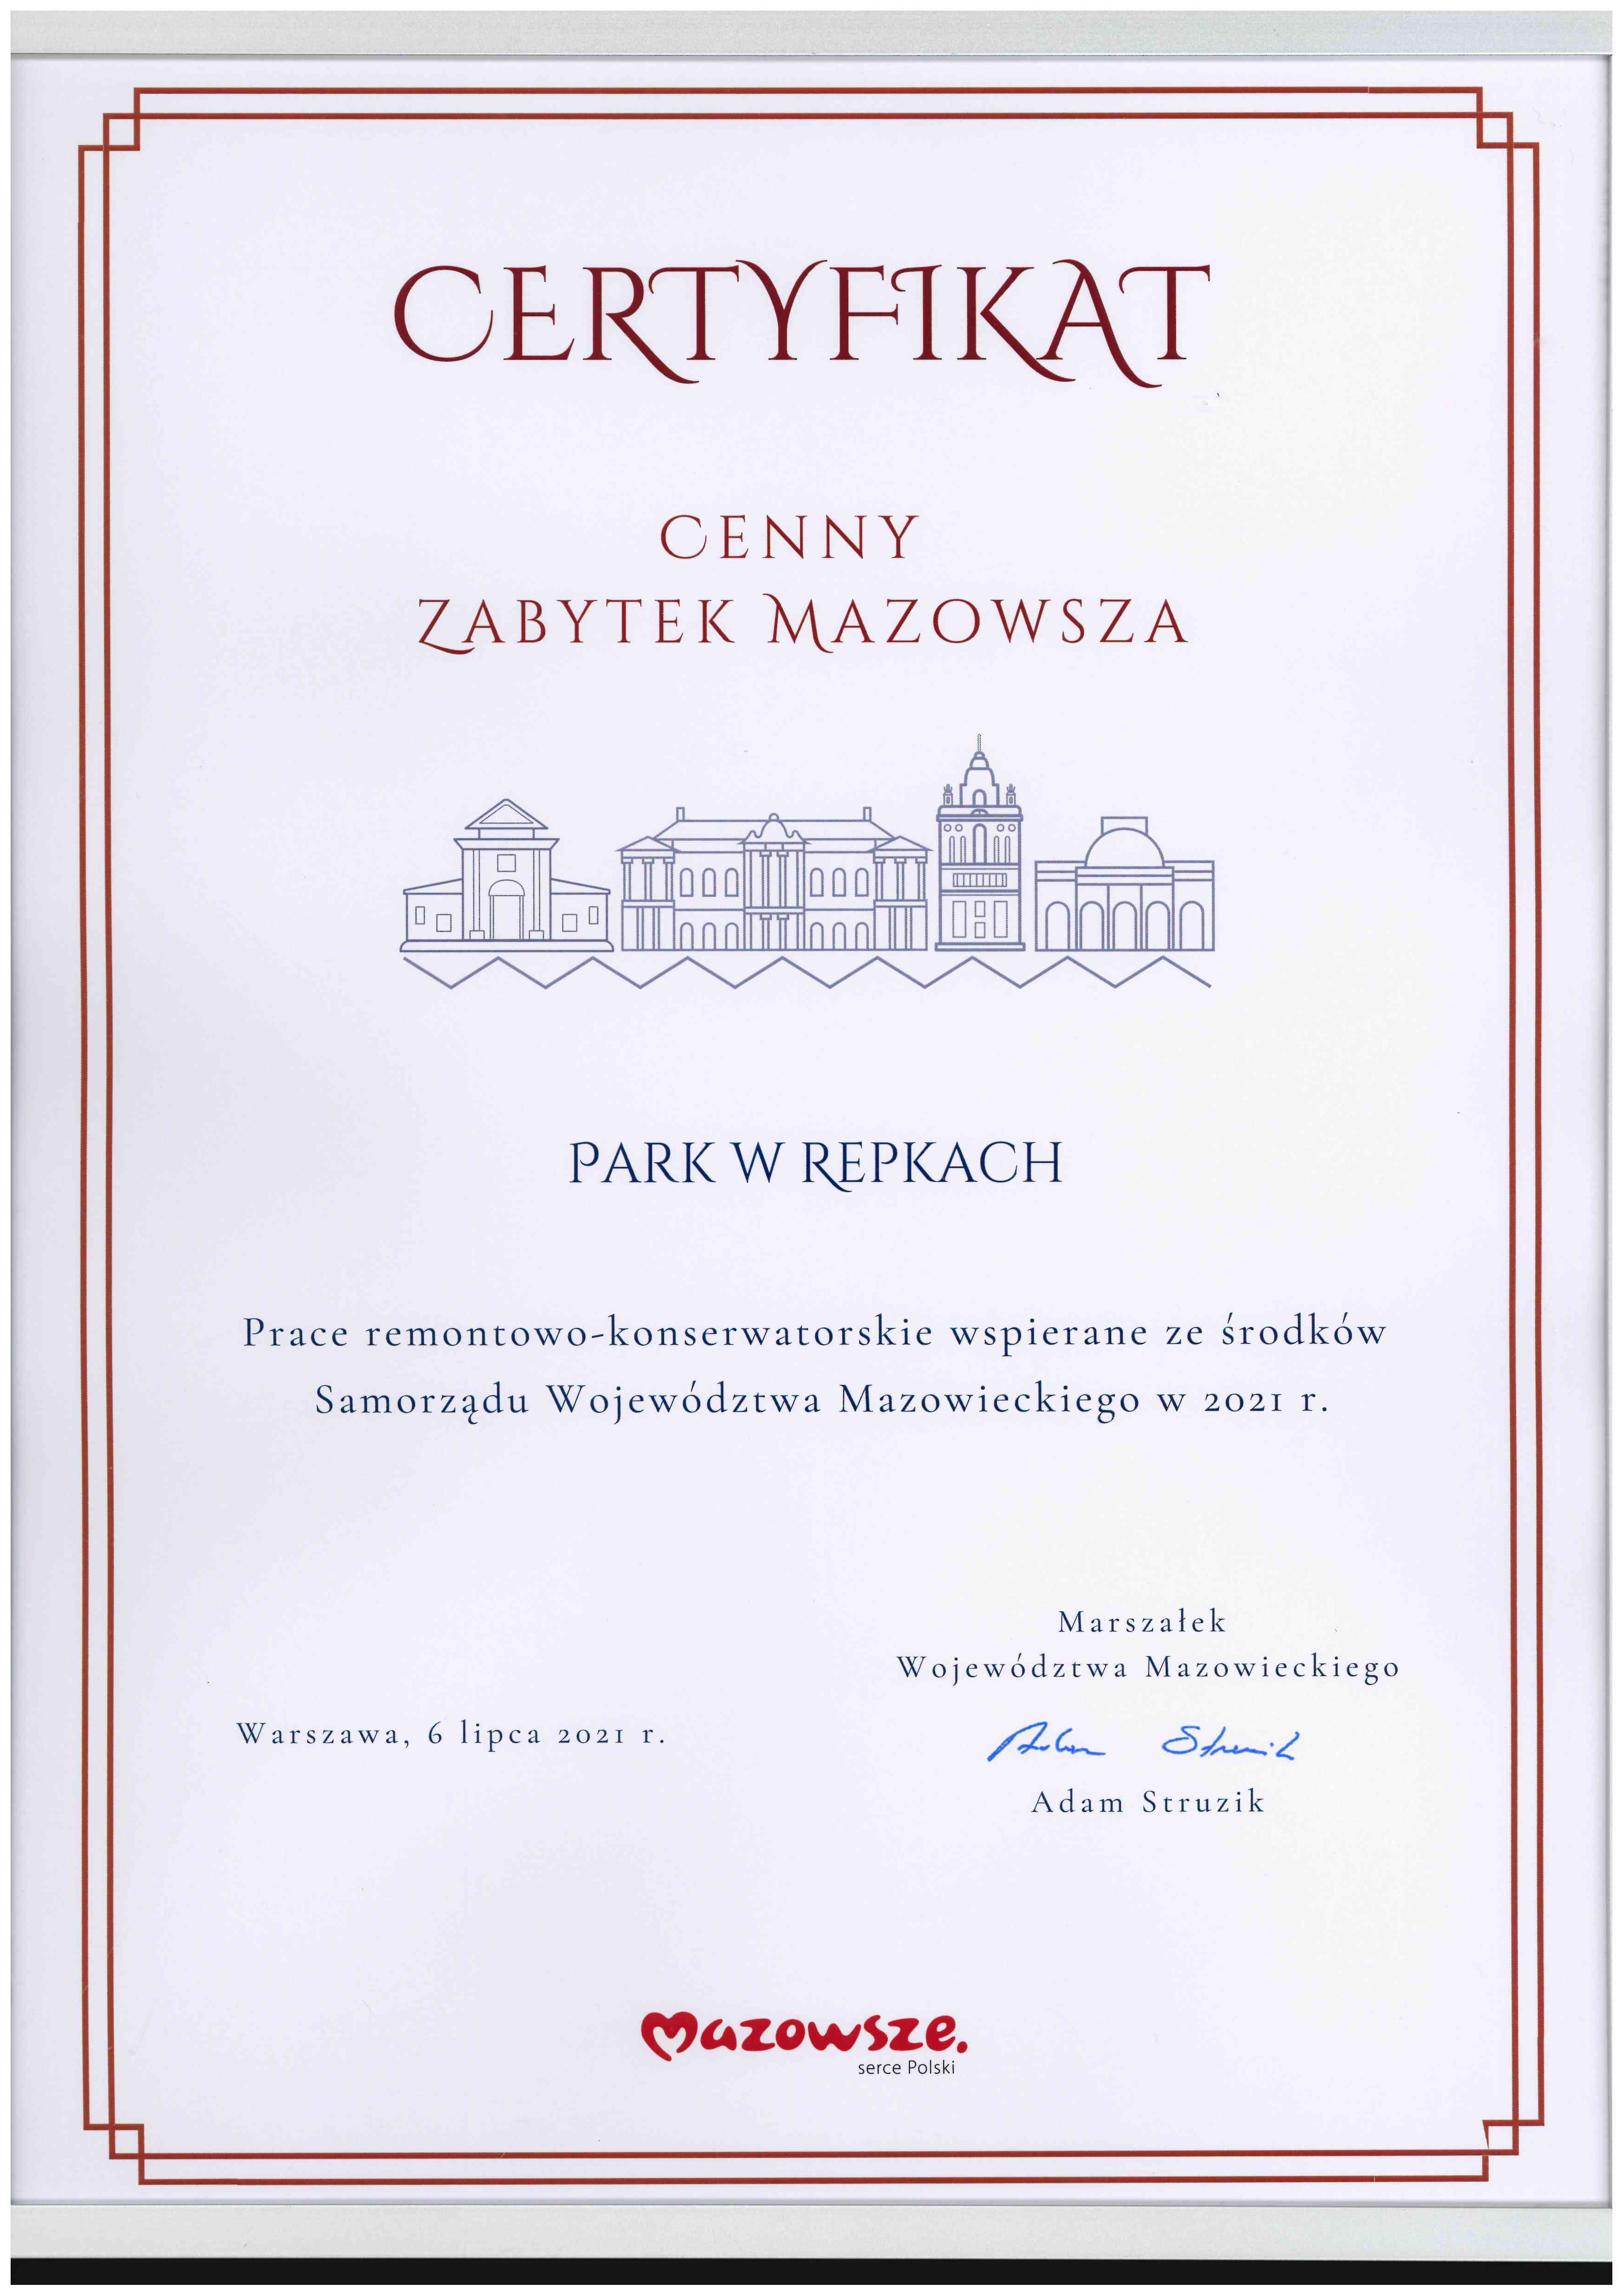 Certyfikat „Cenny zabytek Mazowsza” dla Parku w Repkach